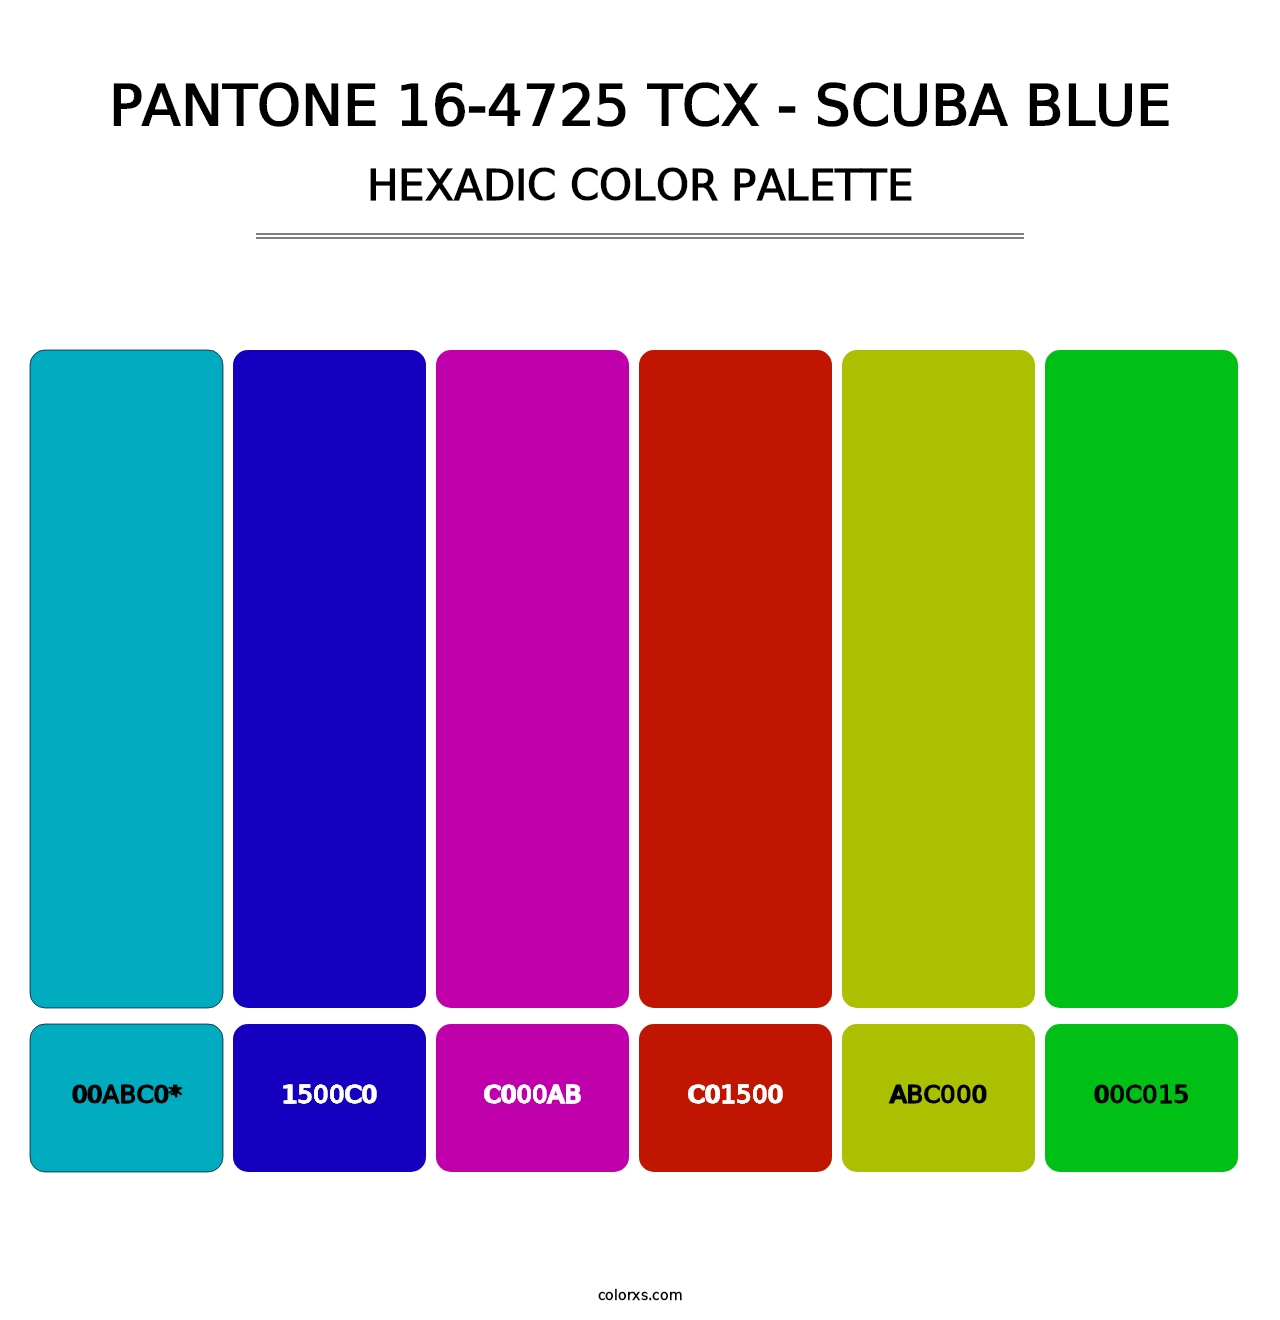 PANTONE 16-4725 TCX - Scuba Blue - Hexadic Color Palette